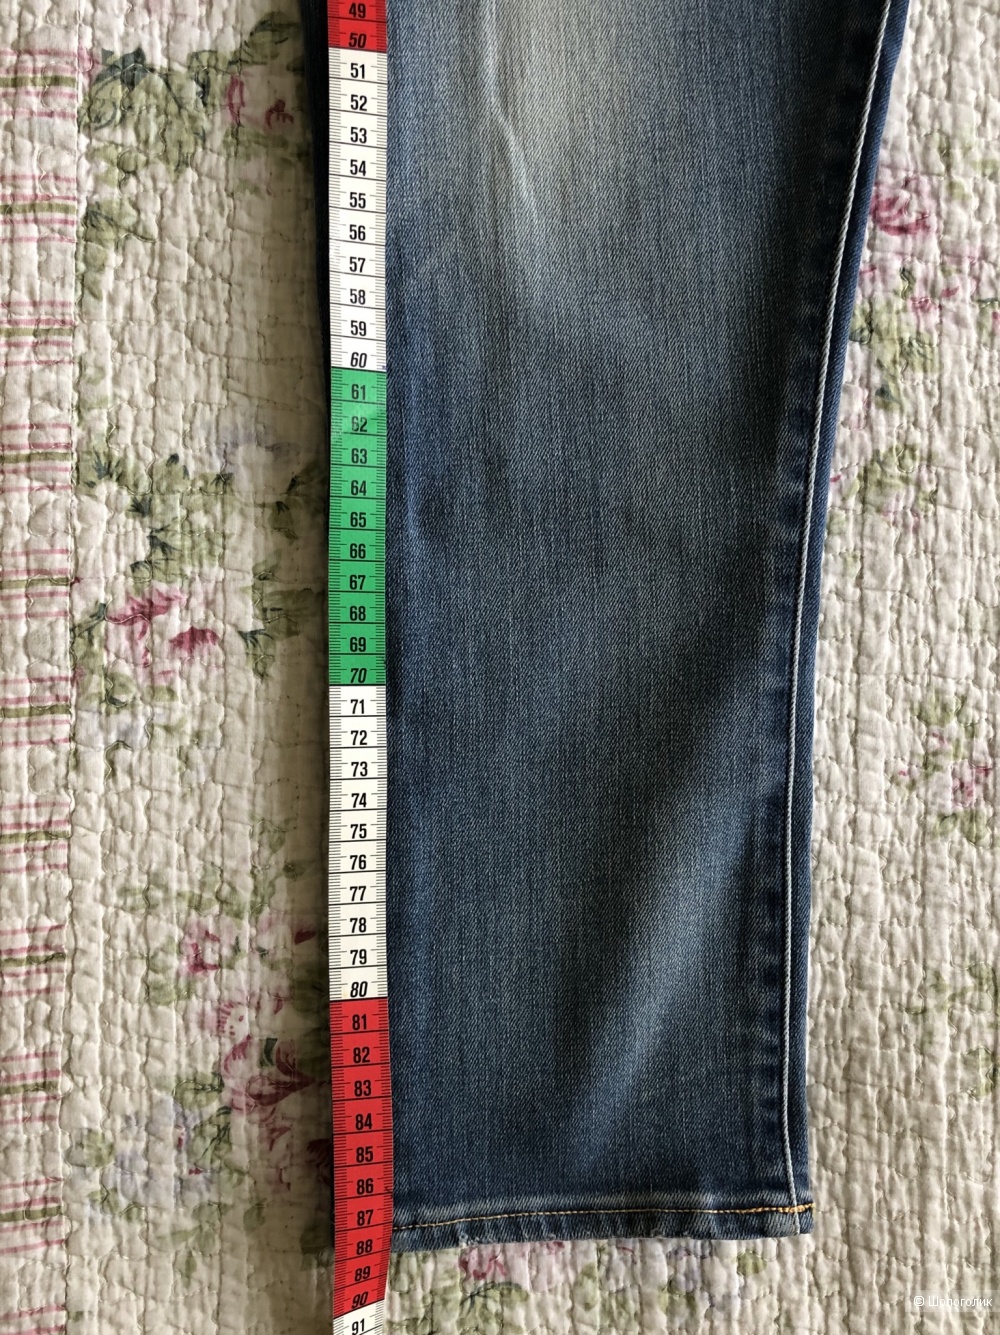 Мужские укороченные джинсы PEOPLE LAB. р. 33